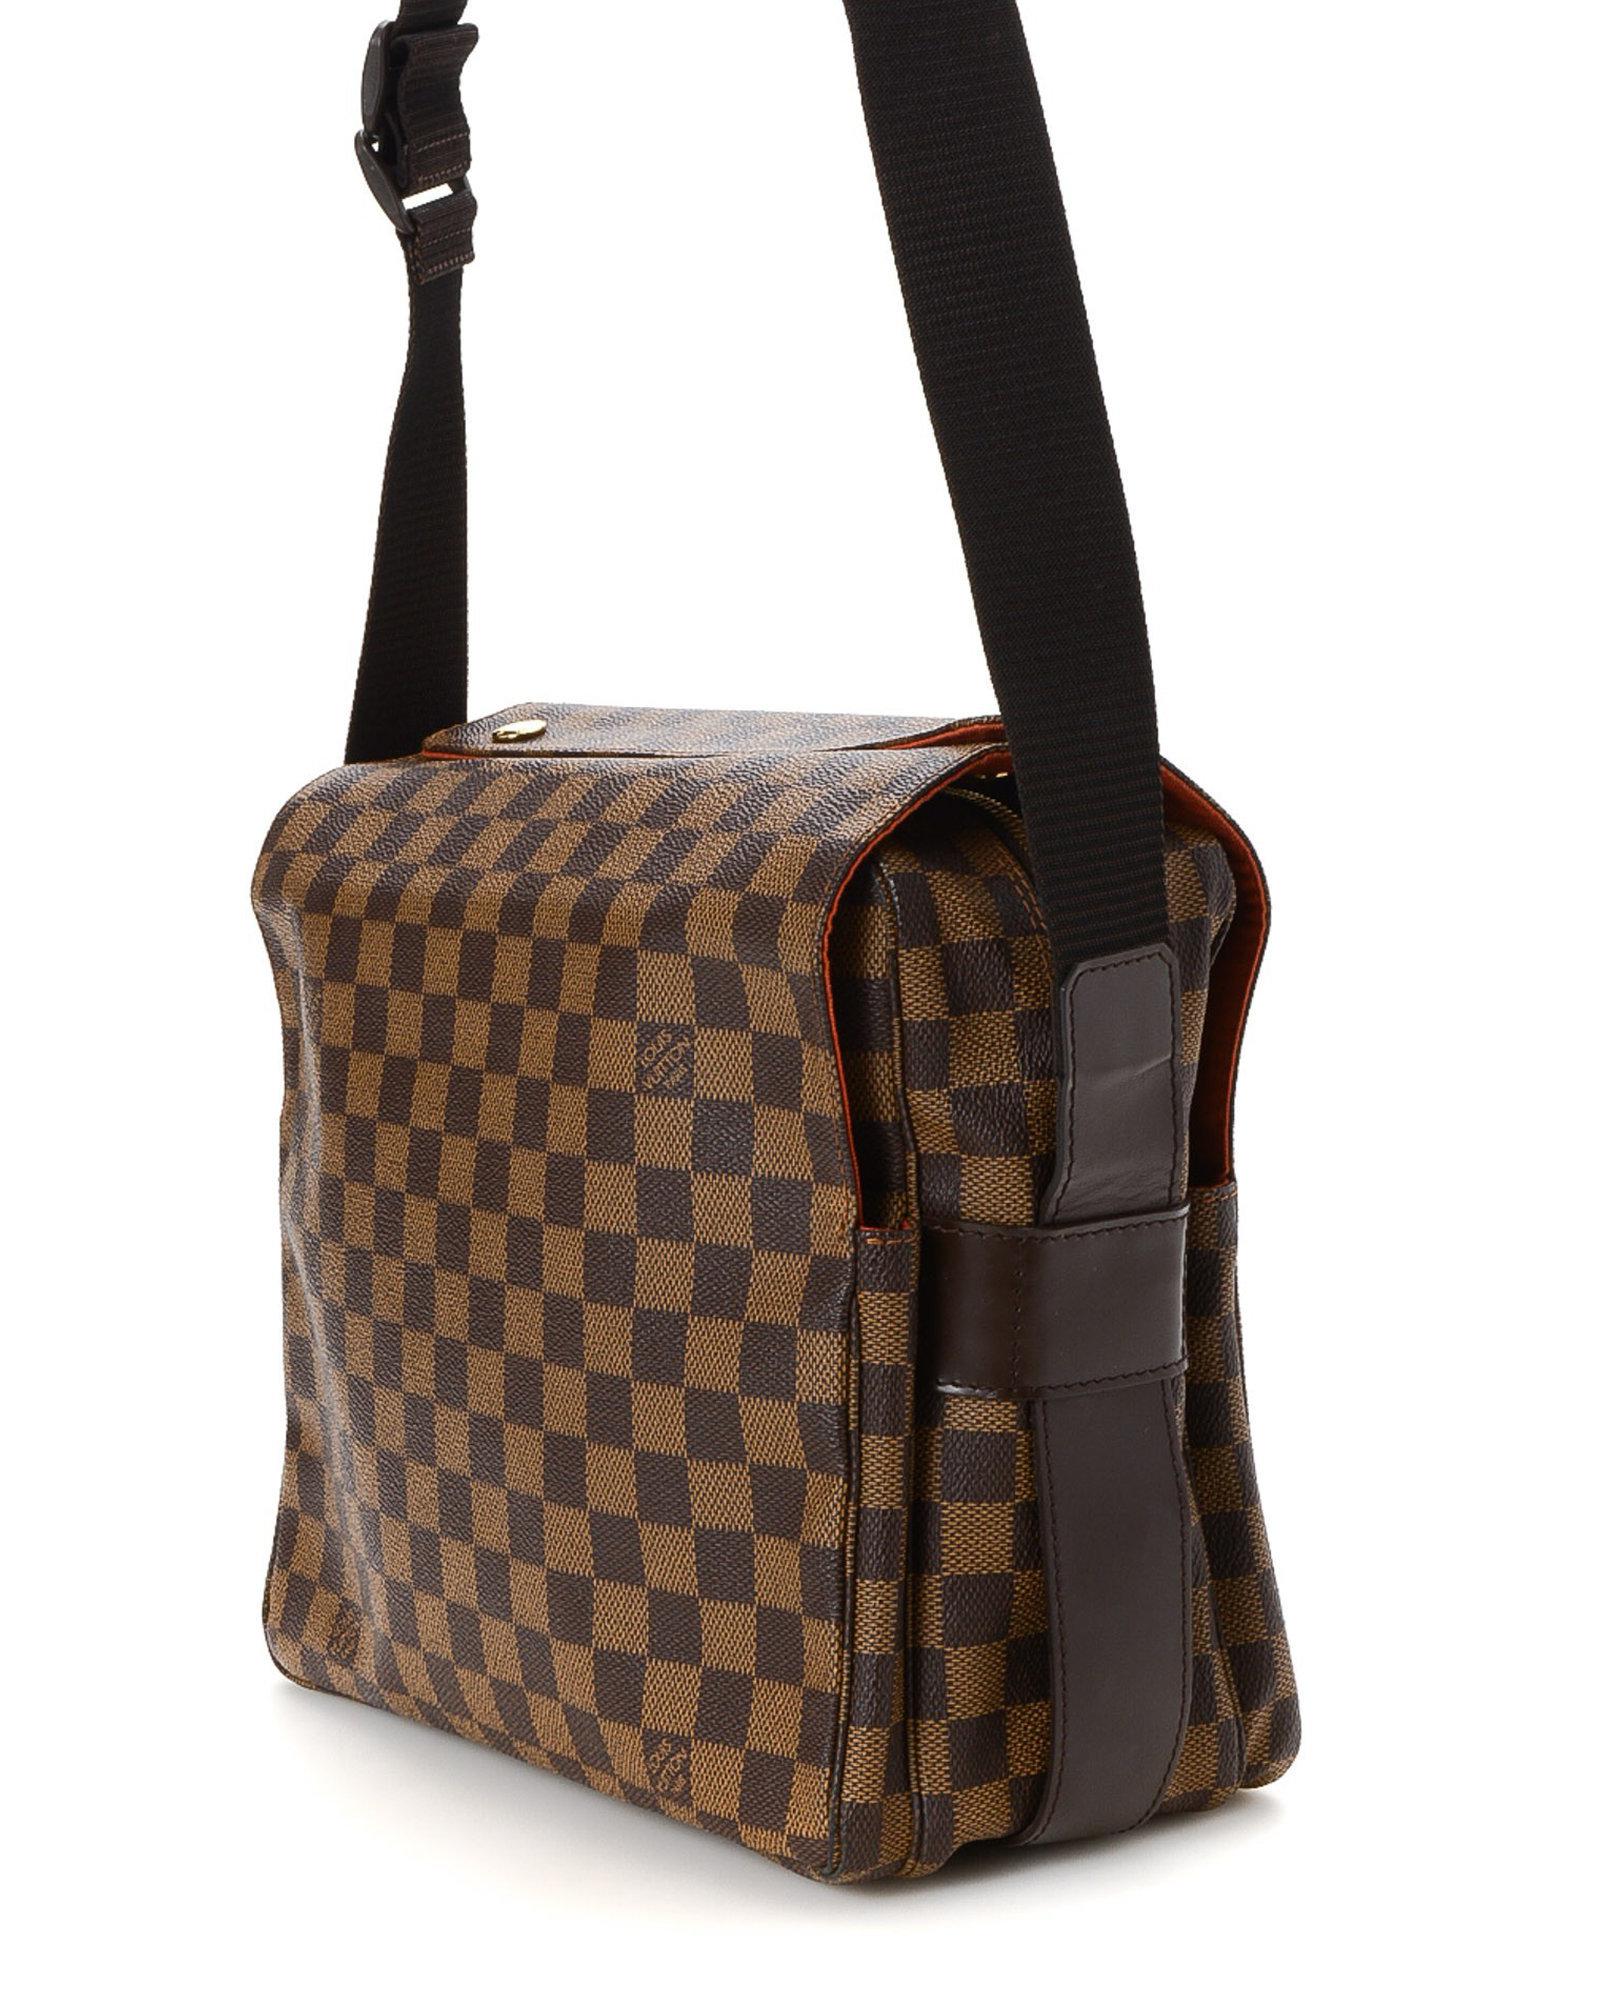 Louis Vuitton Canvas Naviglio Damier Ebene Messenger Bag - Vintage in Brown - Lyst